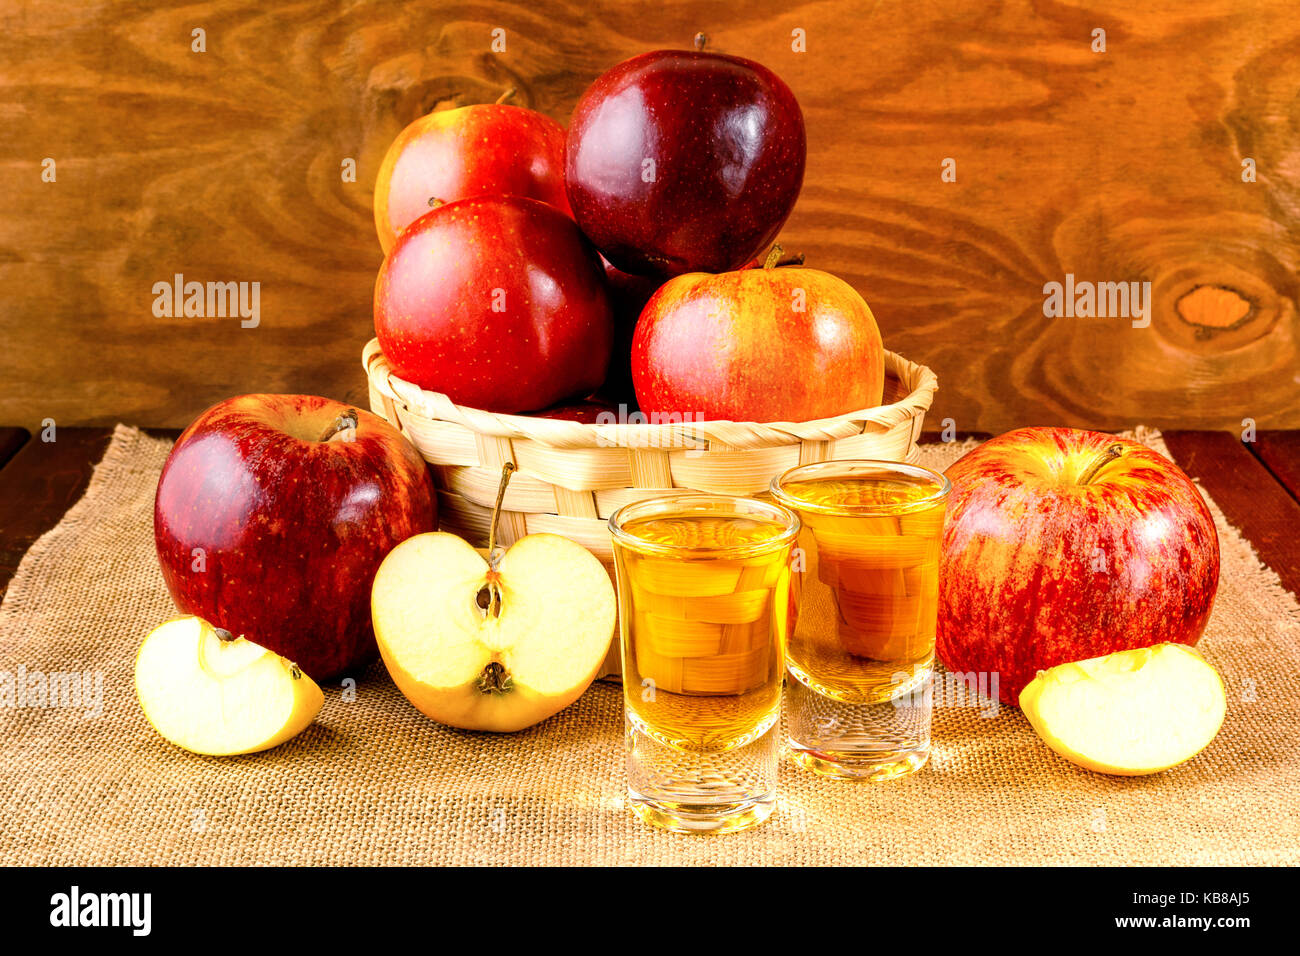 Due grappe bevande e le mele rosse nel cesto di vimini Foto Stock